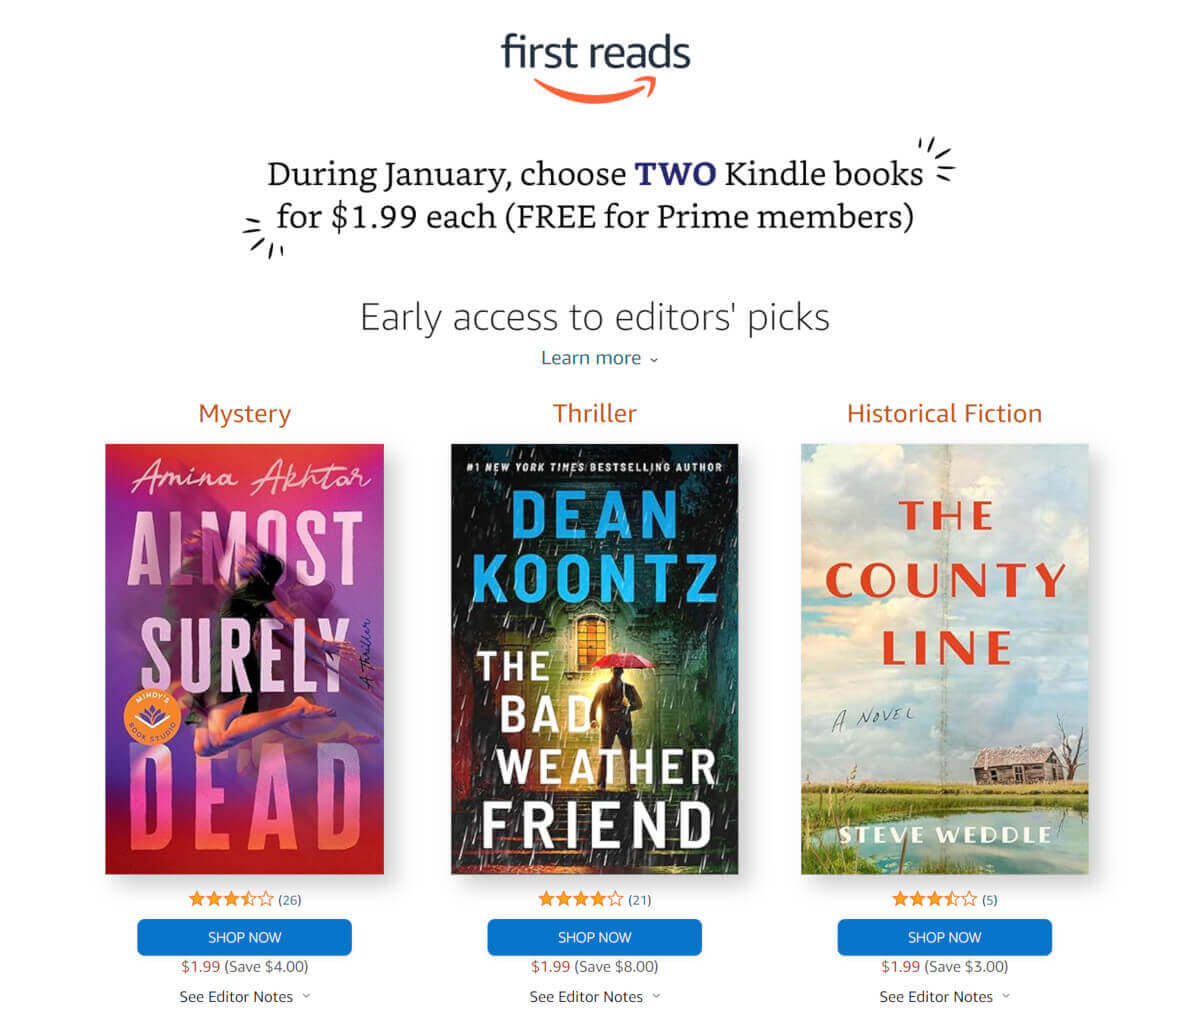 Amazon biedt nu het dubbele aantal gratis downloads van e-boeken aan voorafgaand aan de release in januari